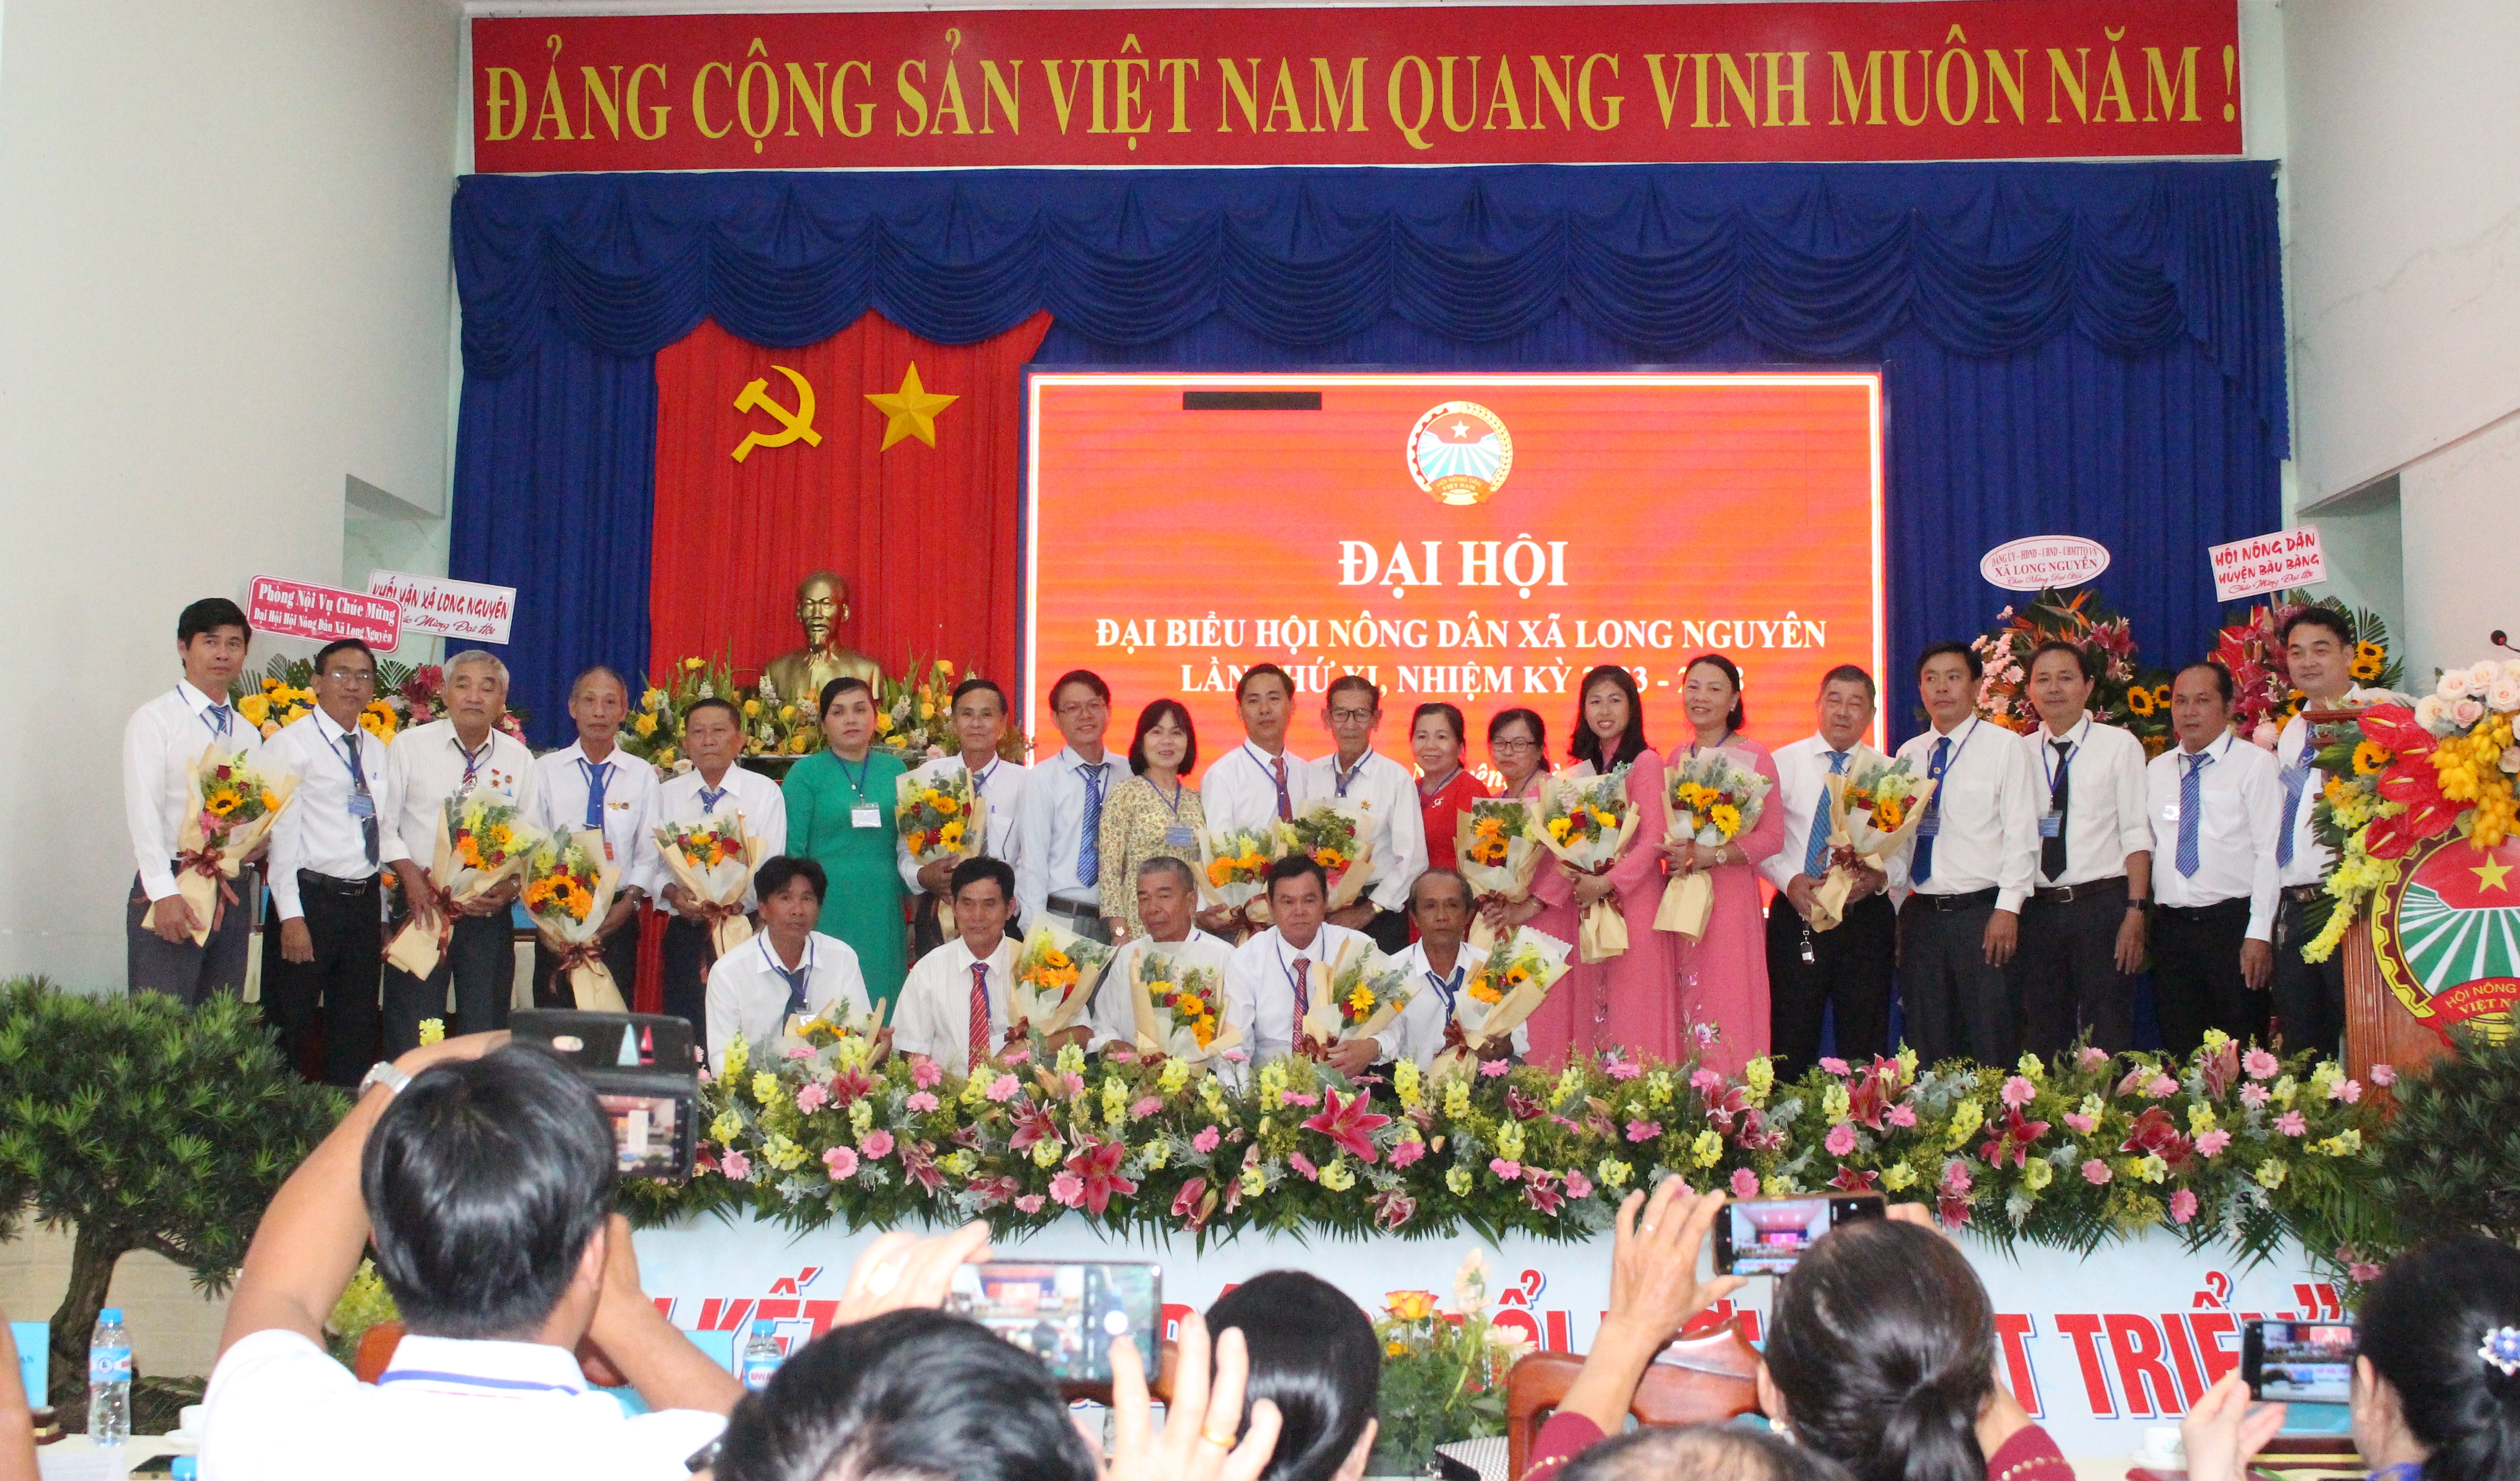 Lãnh đạo huyện, xã tặng hoa và chụp hình lưu niệm cùng Ban Chấp hành Hội Hội Nông dân xã Long Nguyên lần thứ XII, nhiệm kỳ 2023-2028.